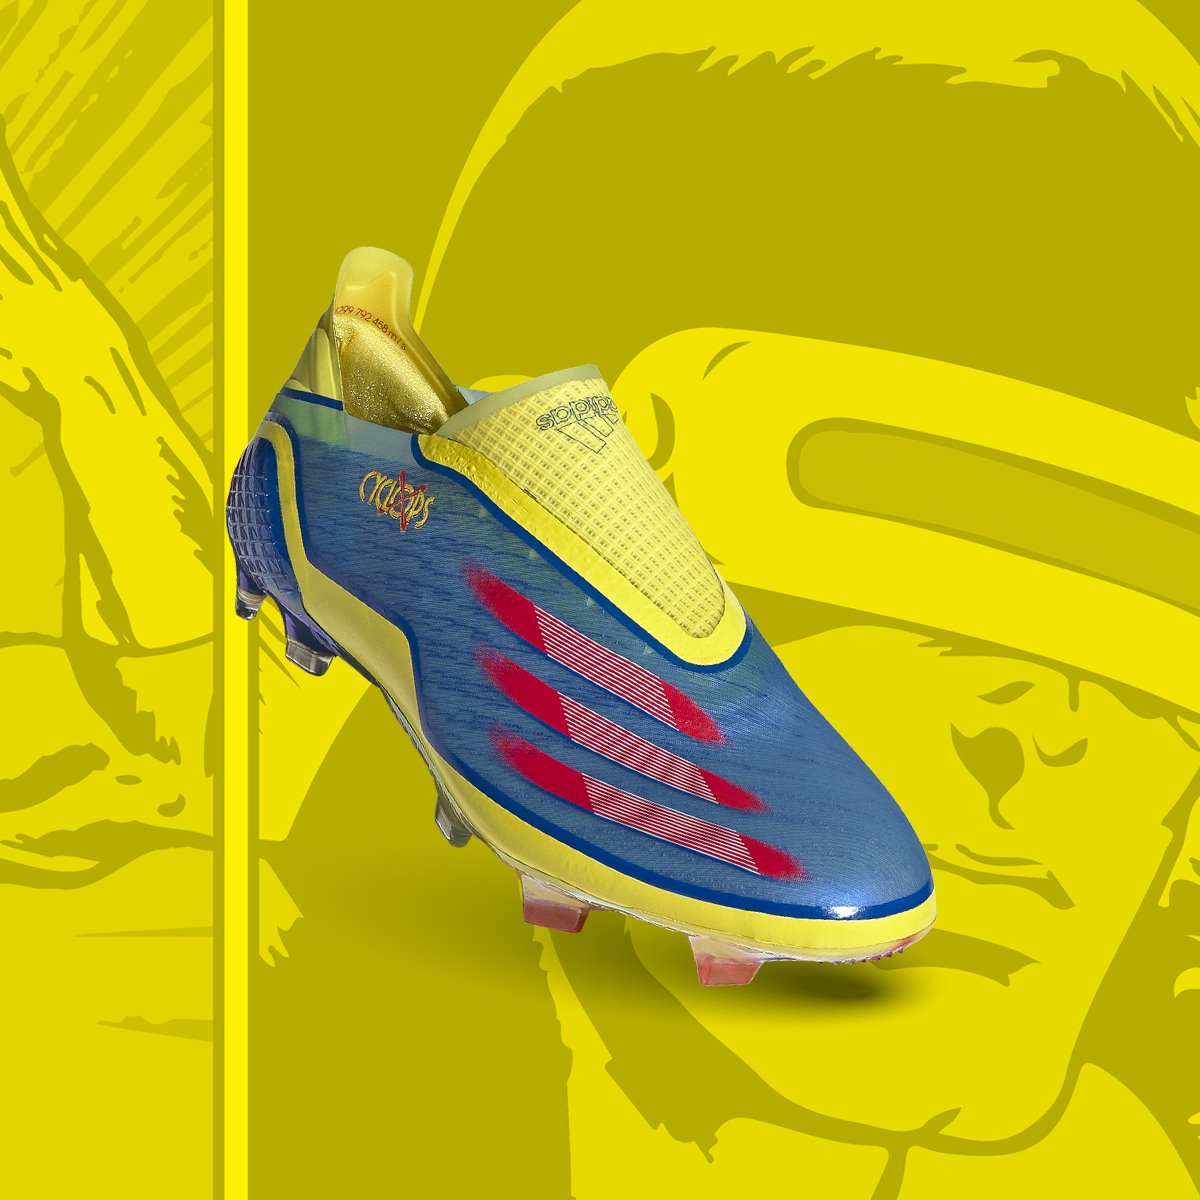 Giới thiệu giày đá bóng adidas X Ghosted Cyclops